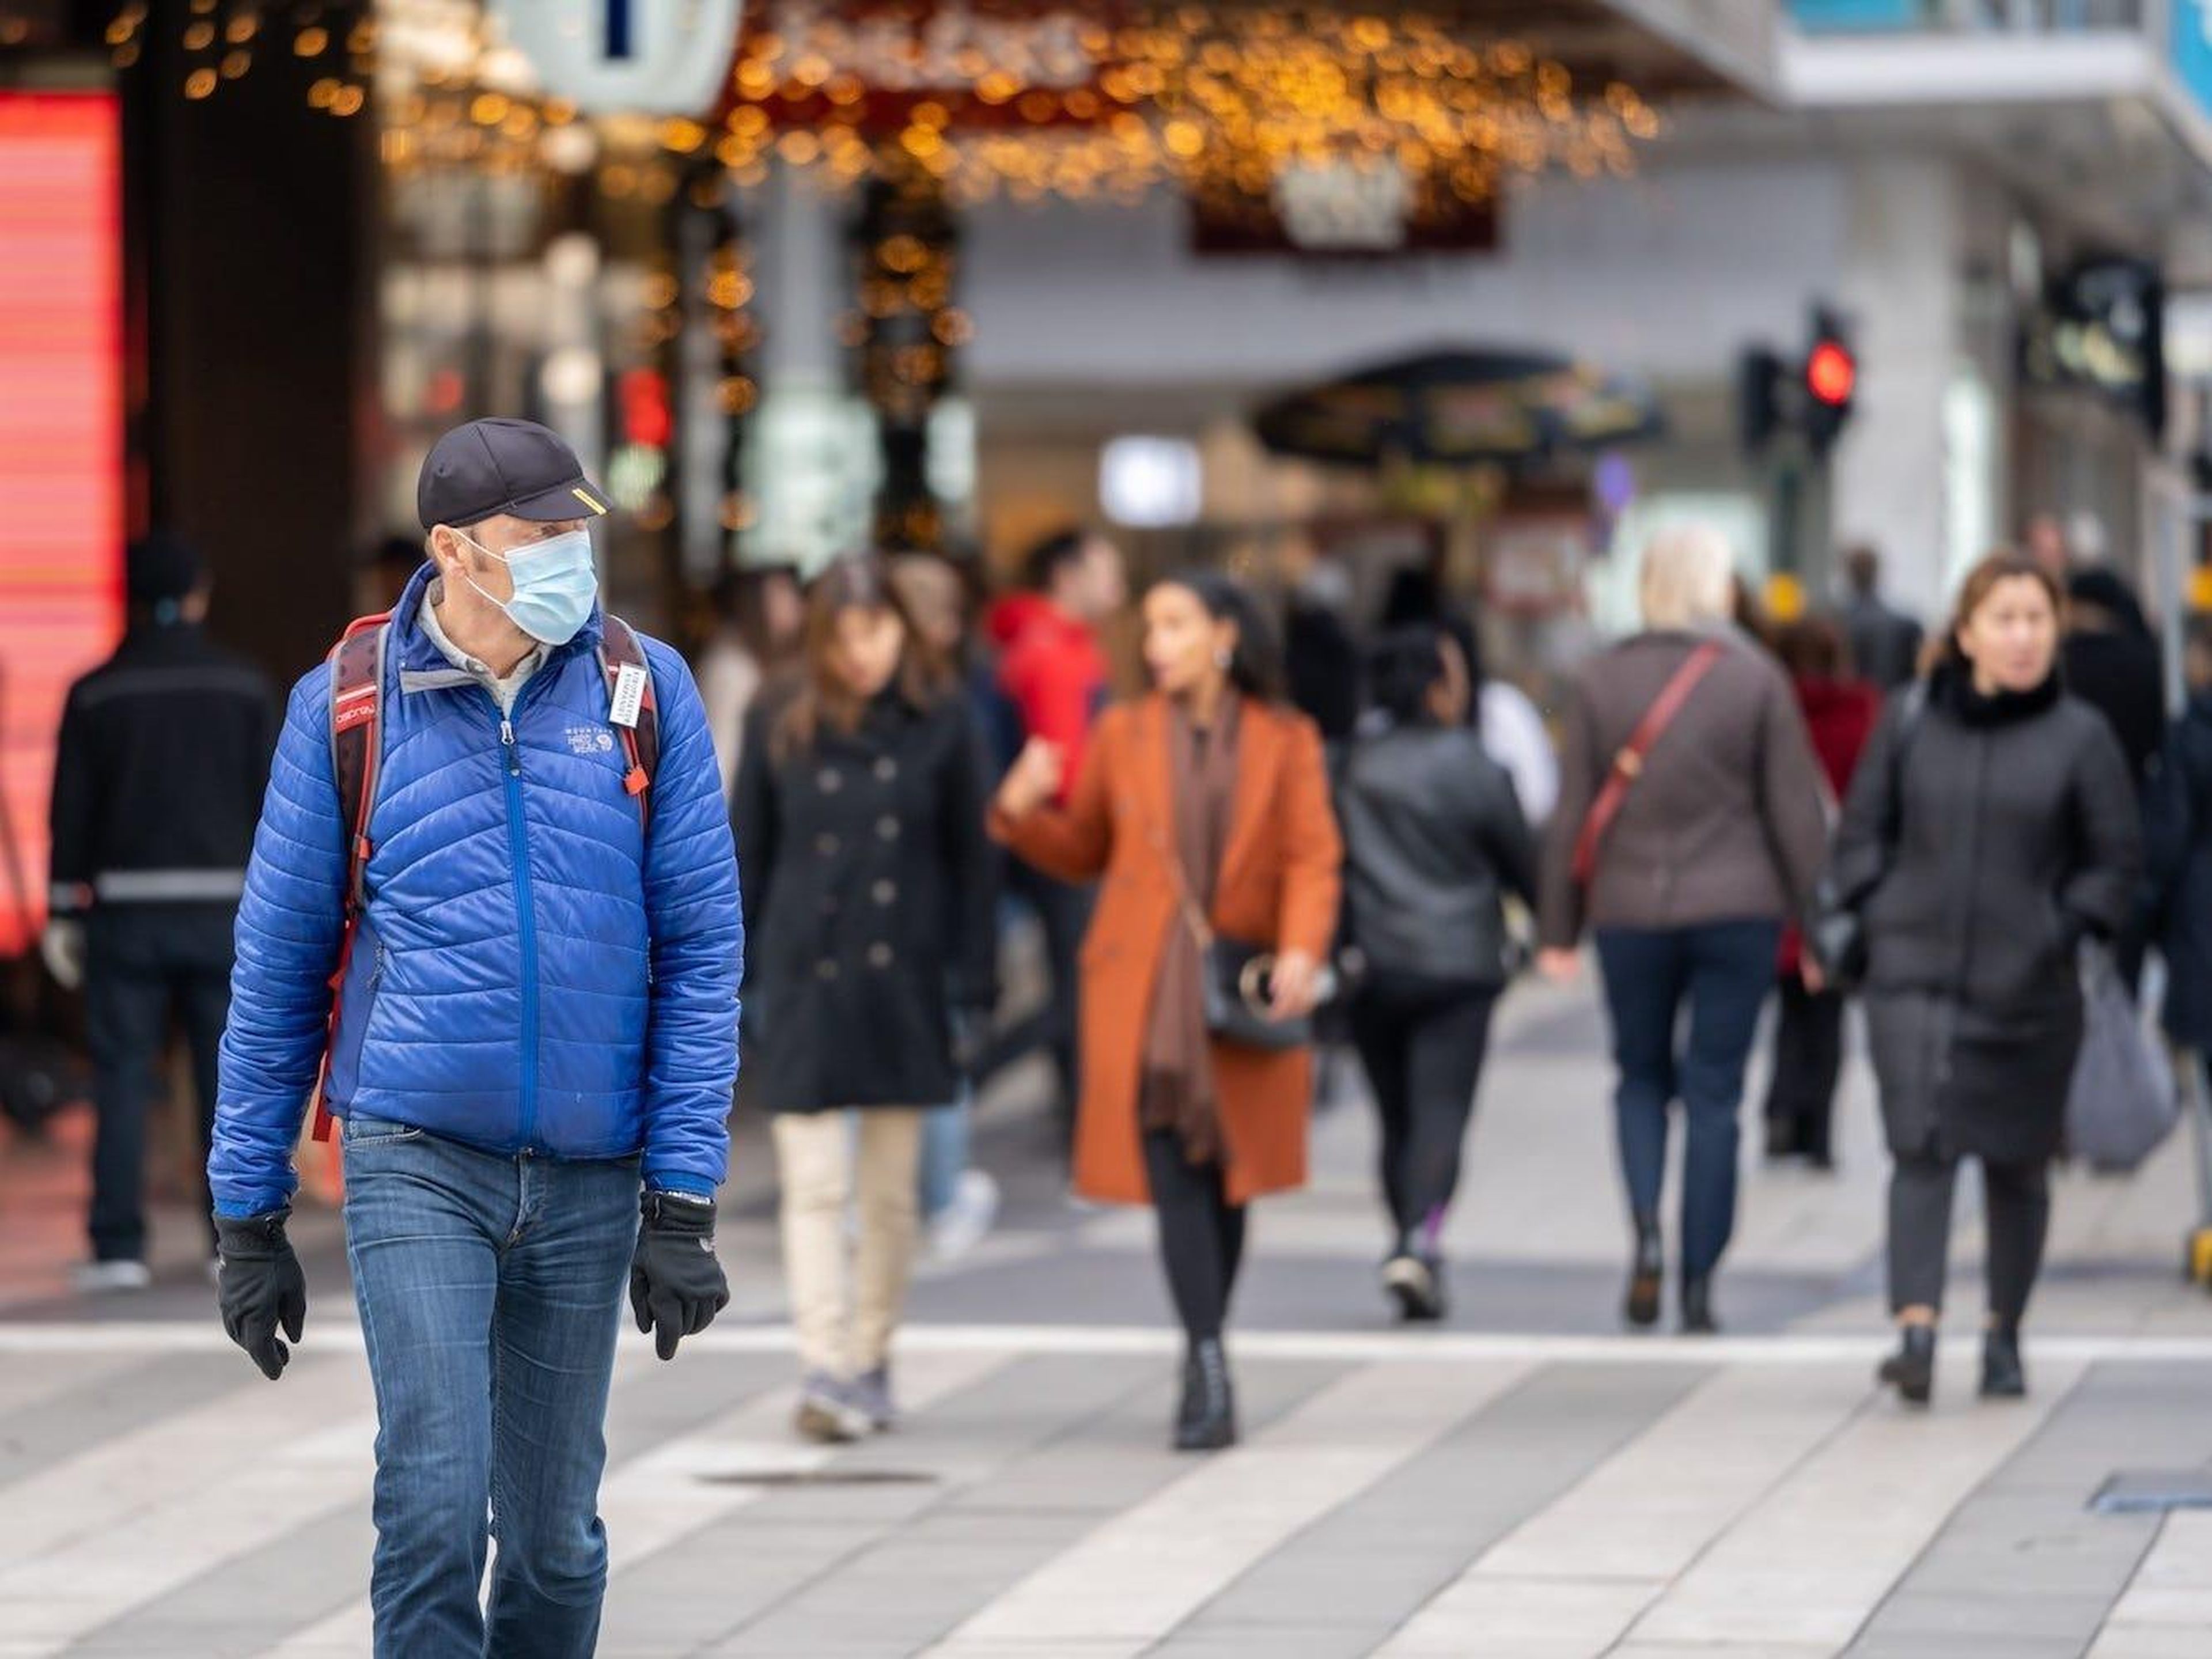 Un hombre con mascarilla camina en la calle durante la pandemia de COVID-19 en Estocolmo, capital de Suecia, el 3 de noviembre de 2020.